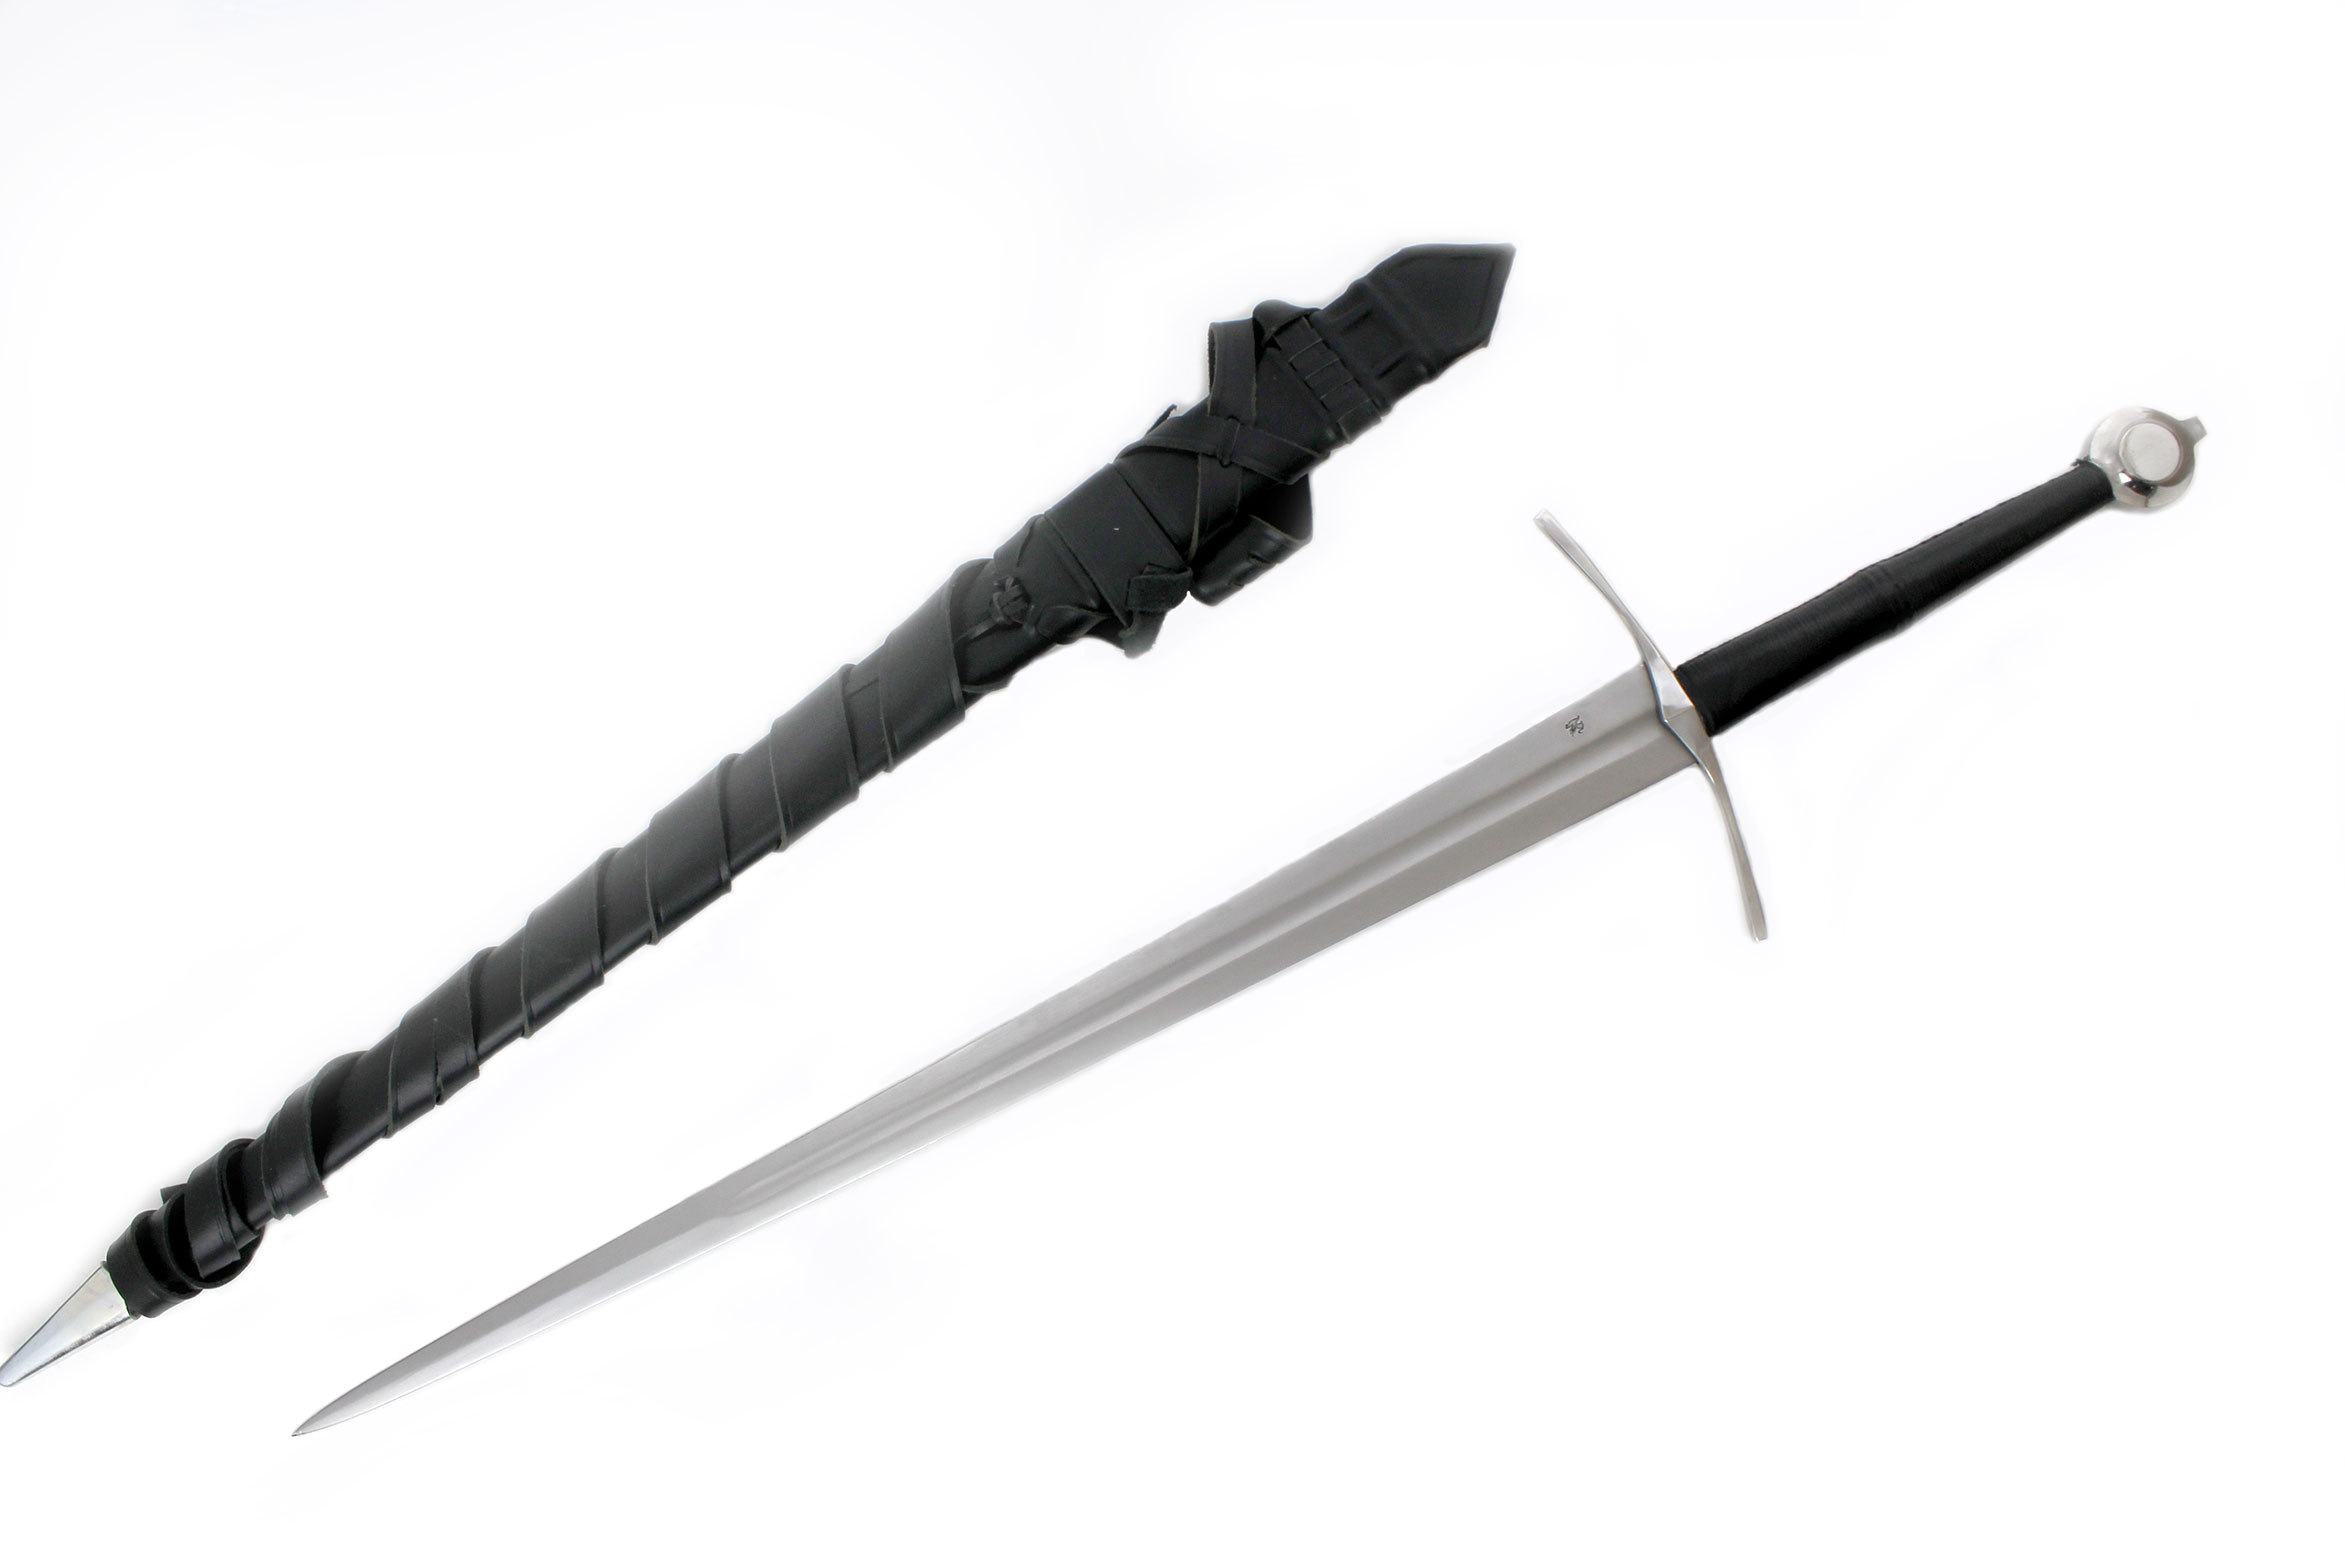 knight-bastard-medieval-sword-1329-4.jpg